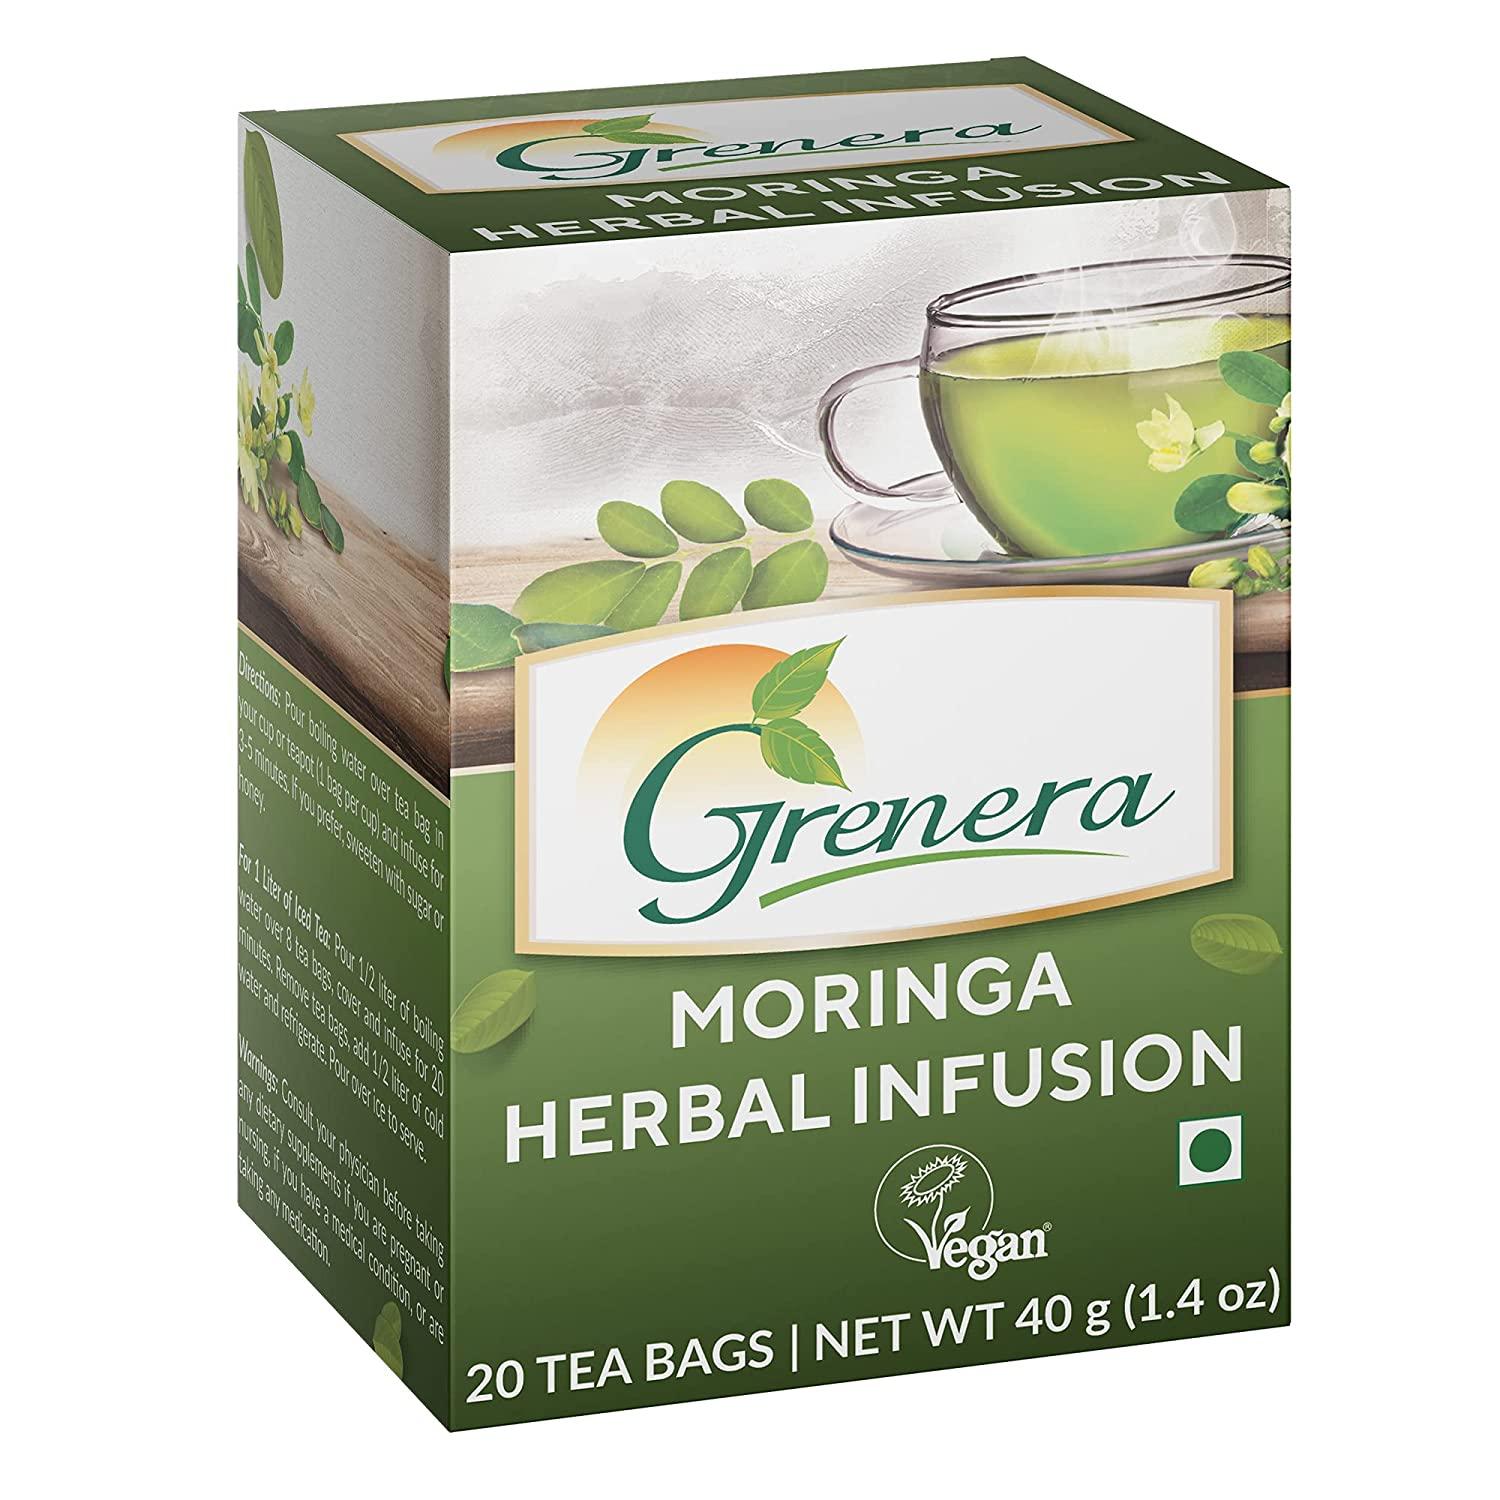 Grenera Moringa Tea Sample for Free